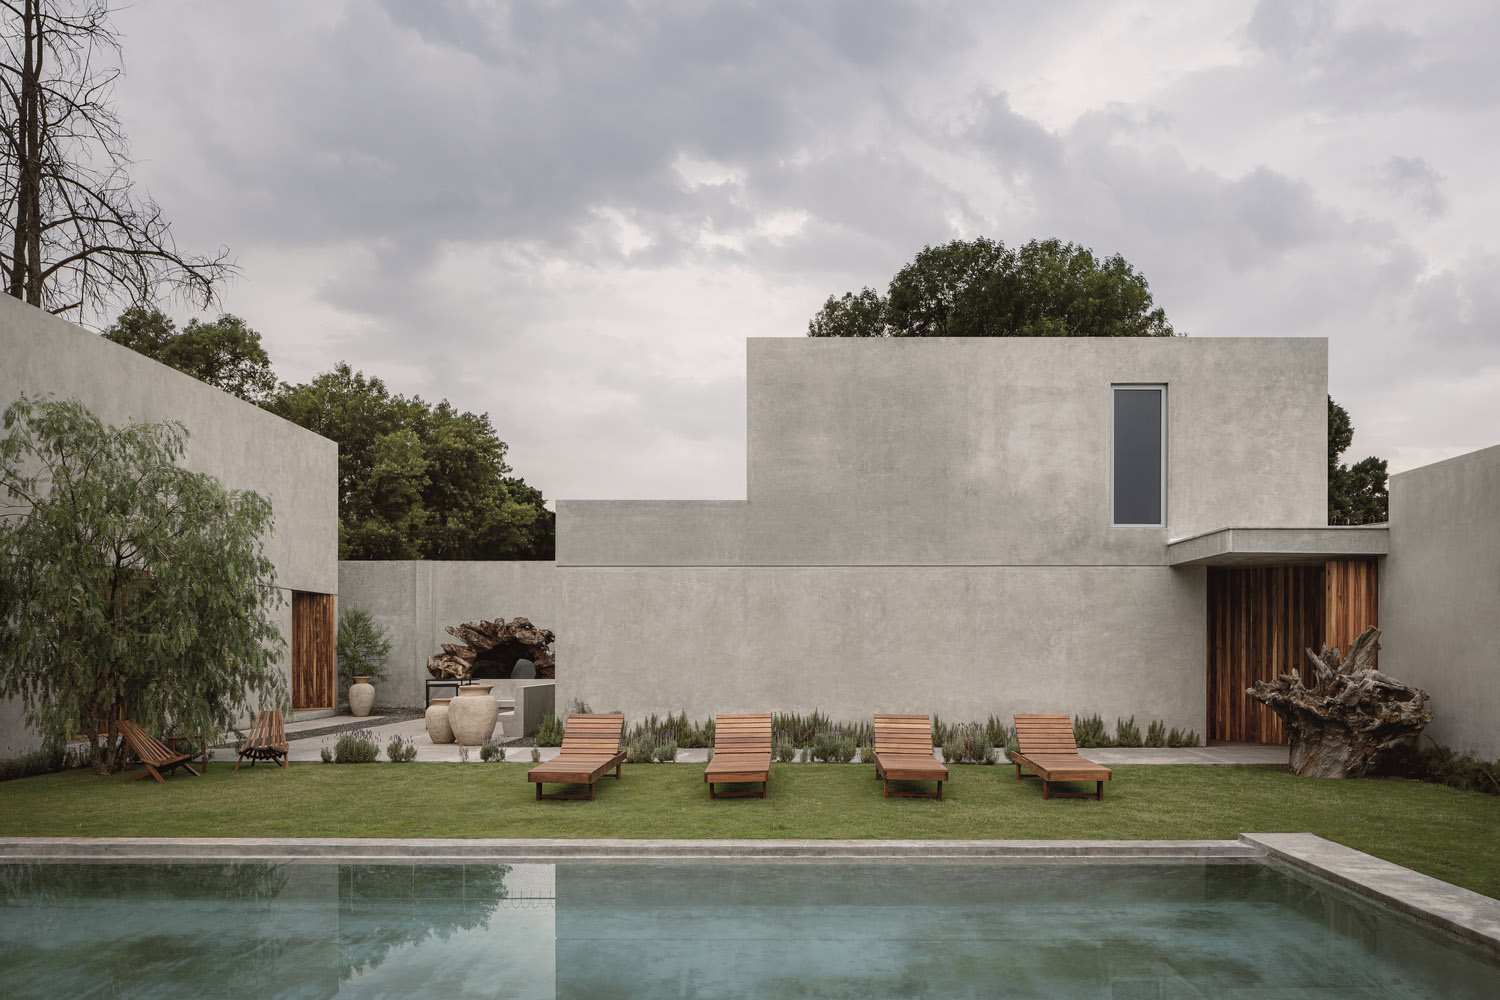 別墅設計,Araujo Galván Arquitectos,鄉村別墅,國外別墅設計案例,墨西哥,別墅庭院設計,480㎡